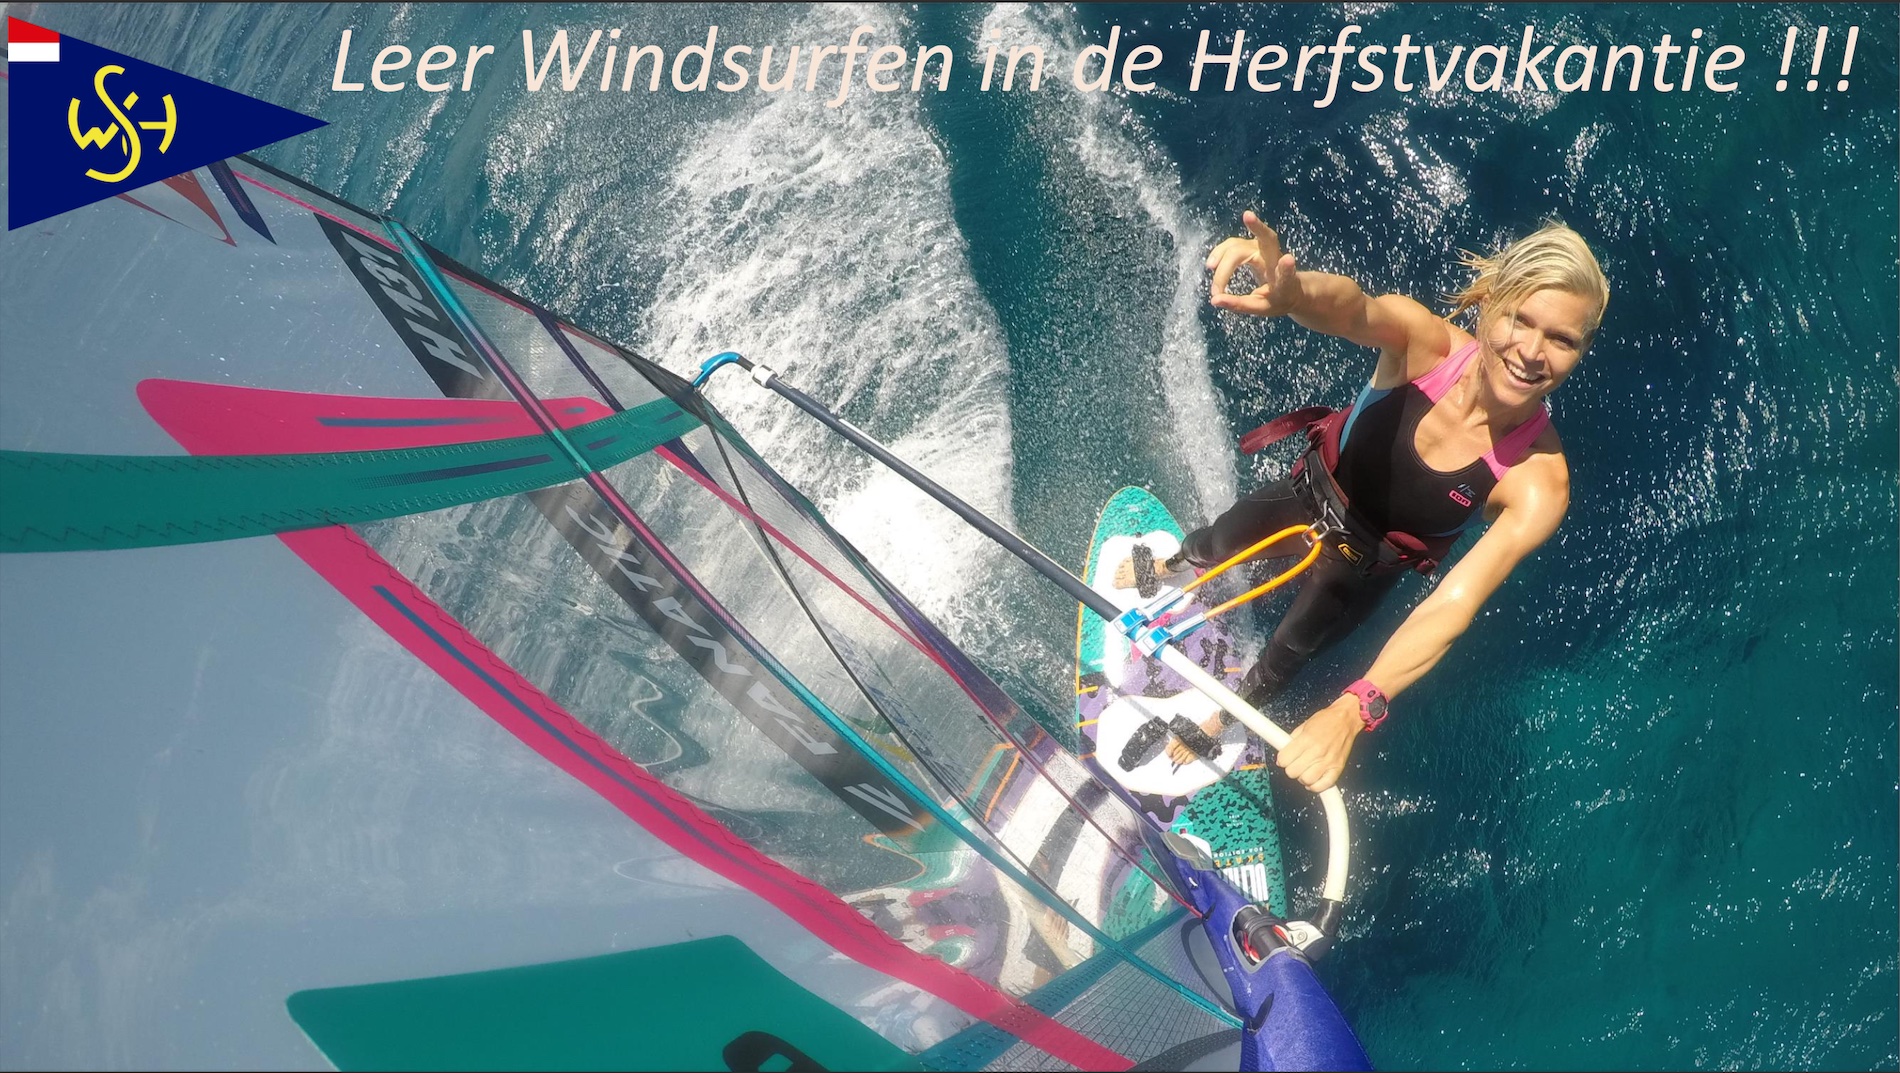 Leer windsurfen in de Herfstvakantie!